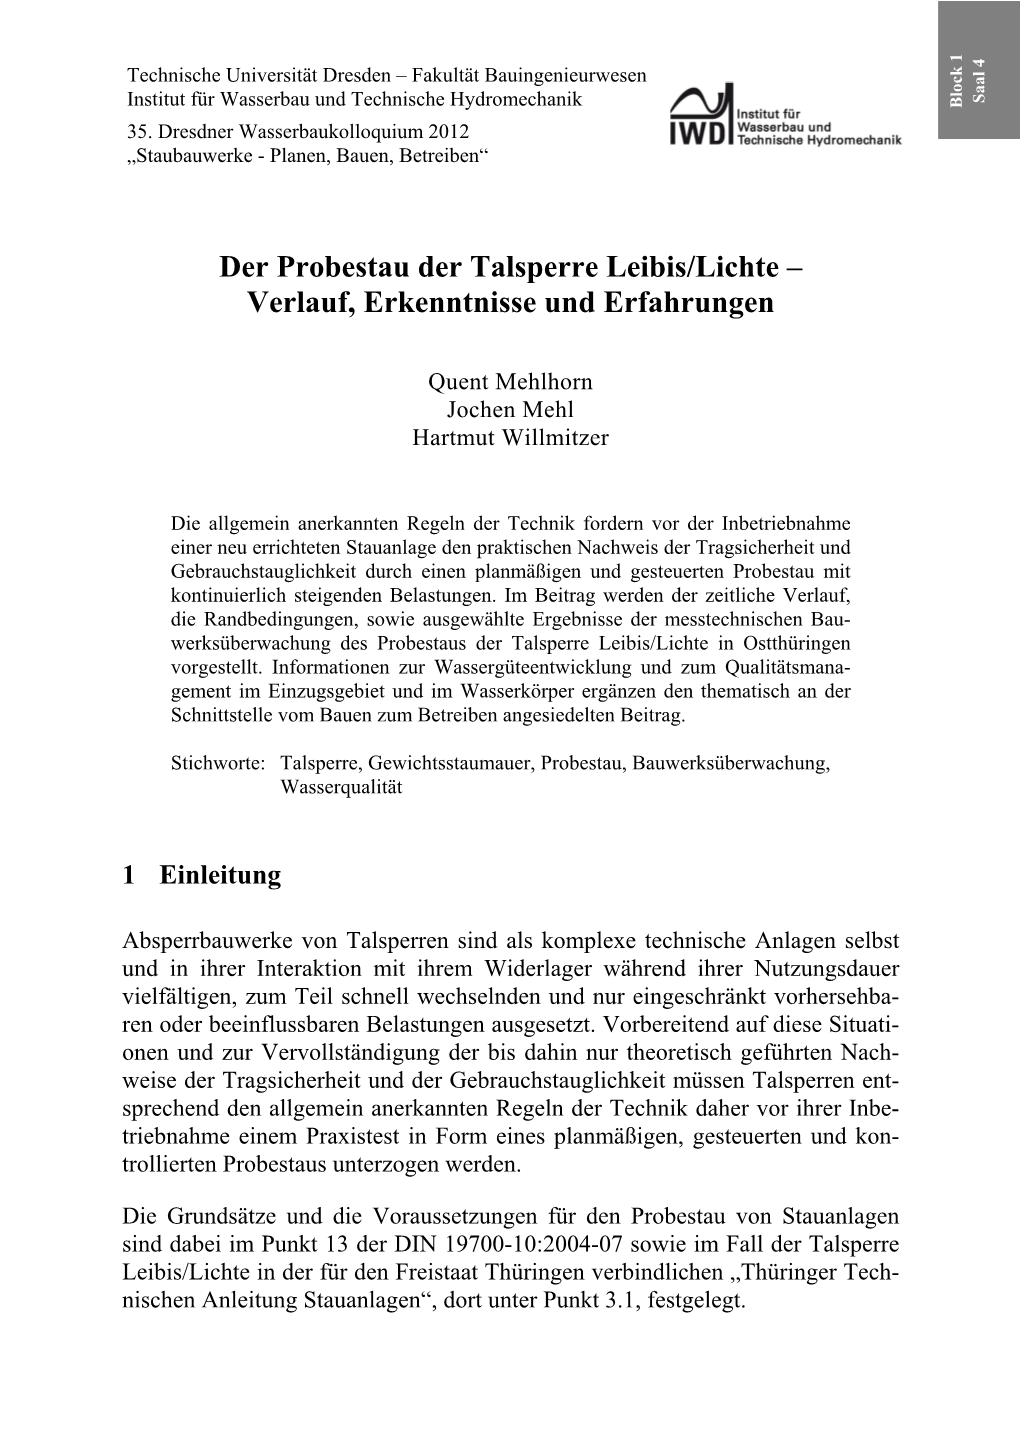 Der Probestau Der Talsperre Leibis/Lichte – Verlauf, Erkenntnisse Und Erfahrungen